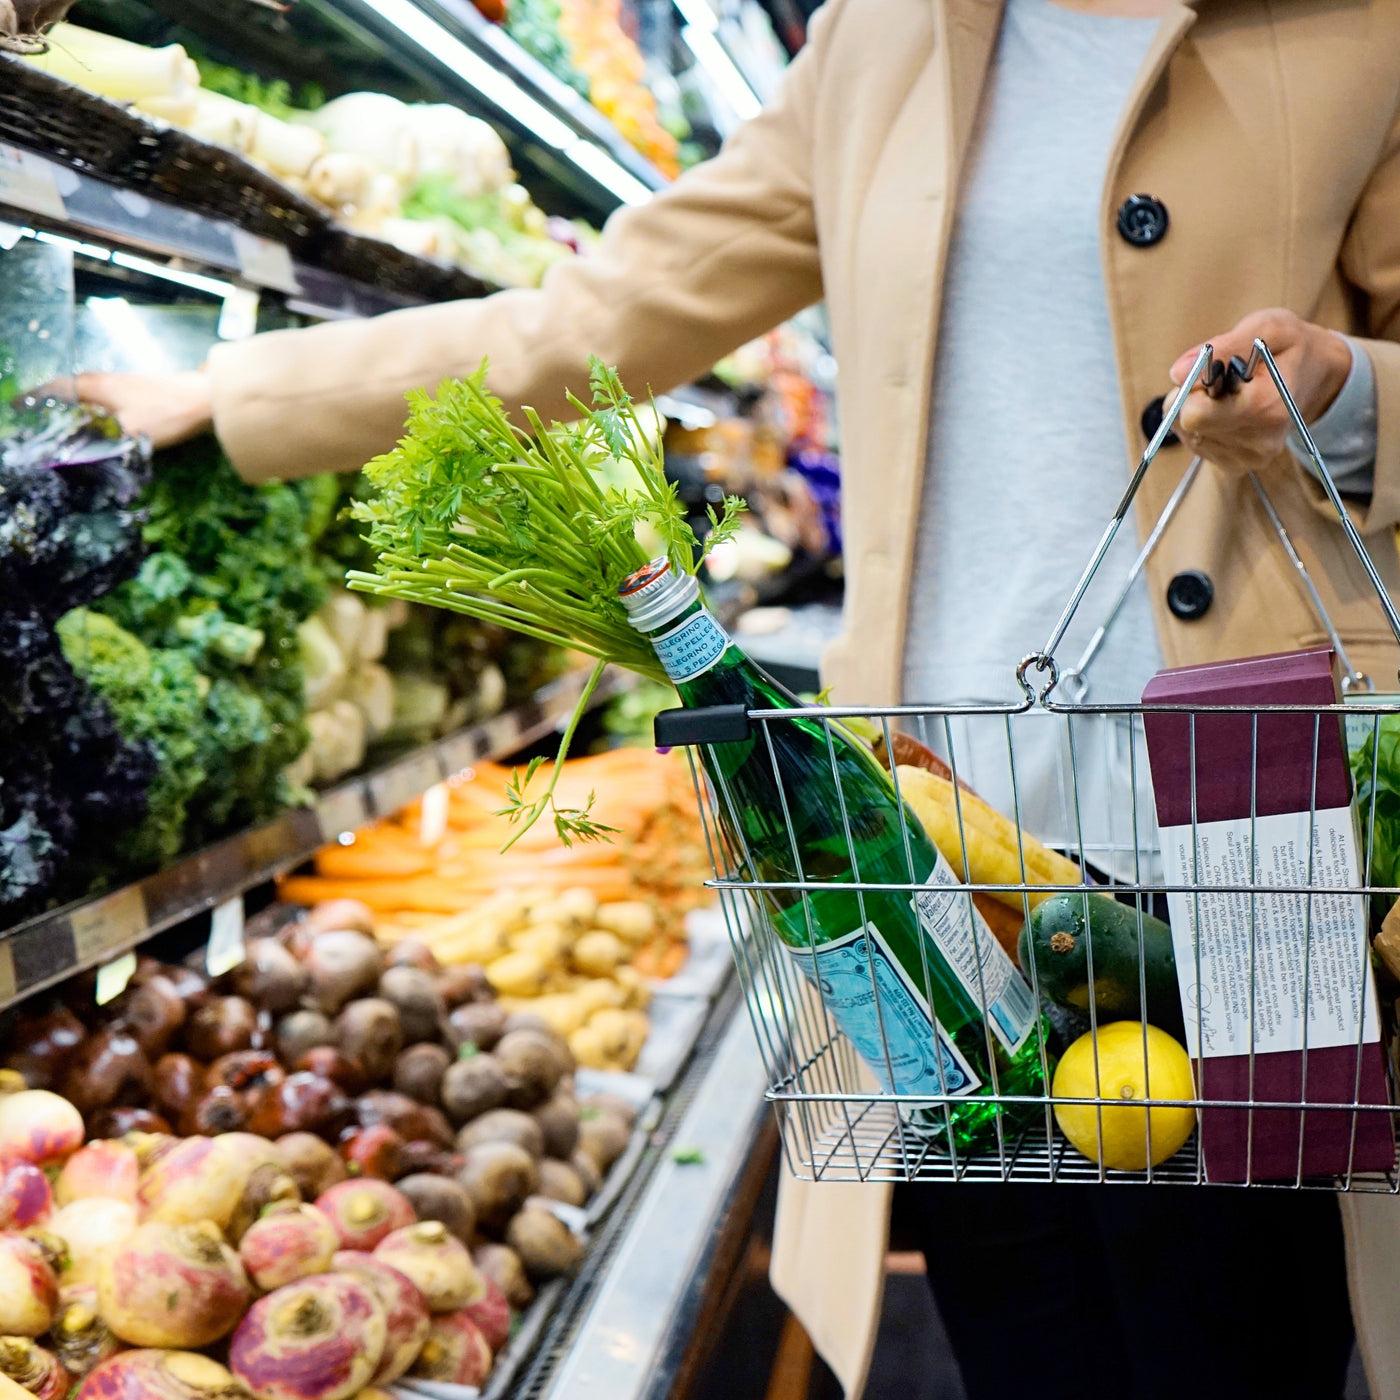 L'ABC des étiquettes et listes d'ingrédients : comment faire les bons choix en épicerie et comprendre les étiquettes nutritionnelles? Isabelle Huot Docteure en nutrition fait le point dans ce webinaire.